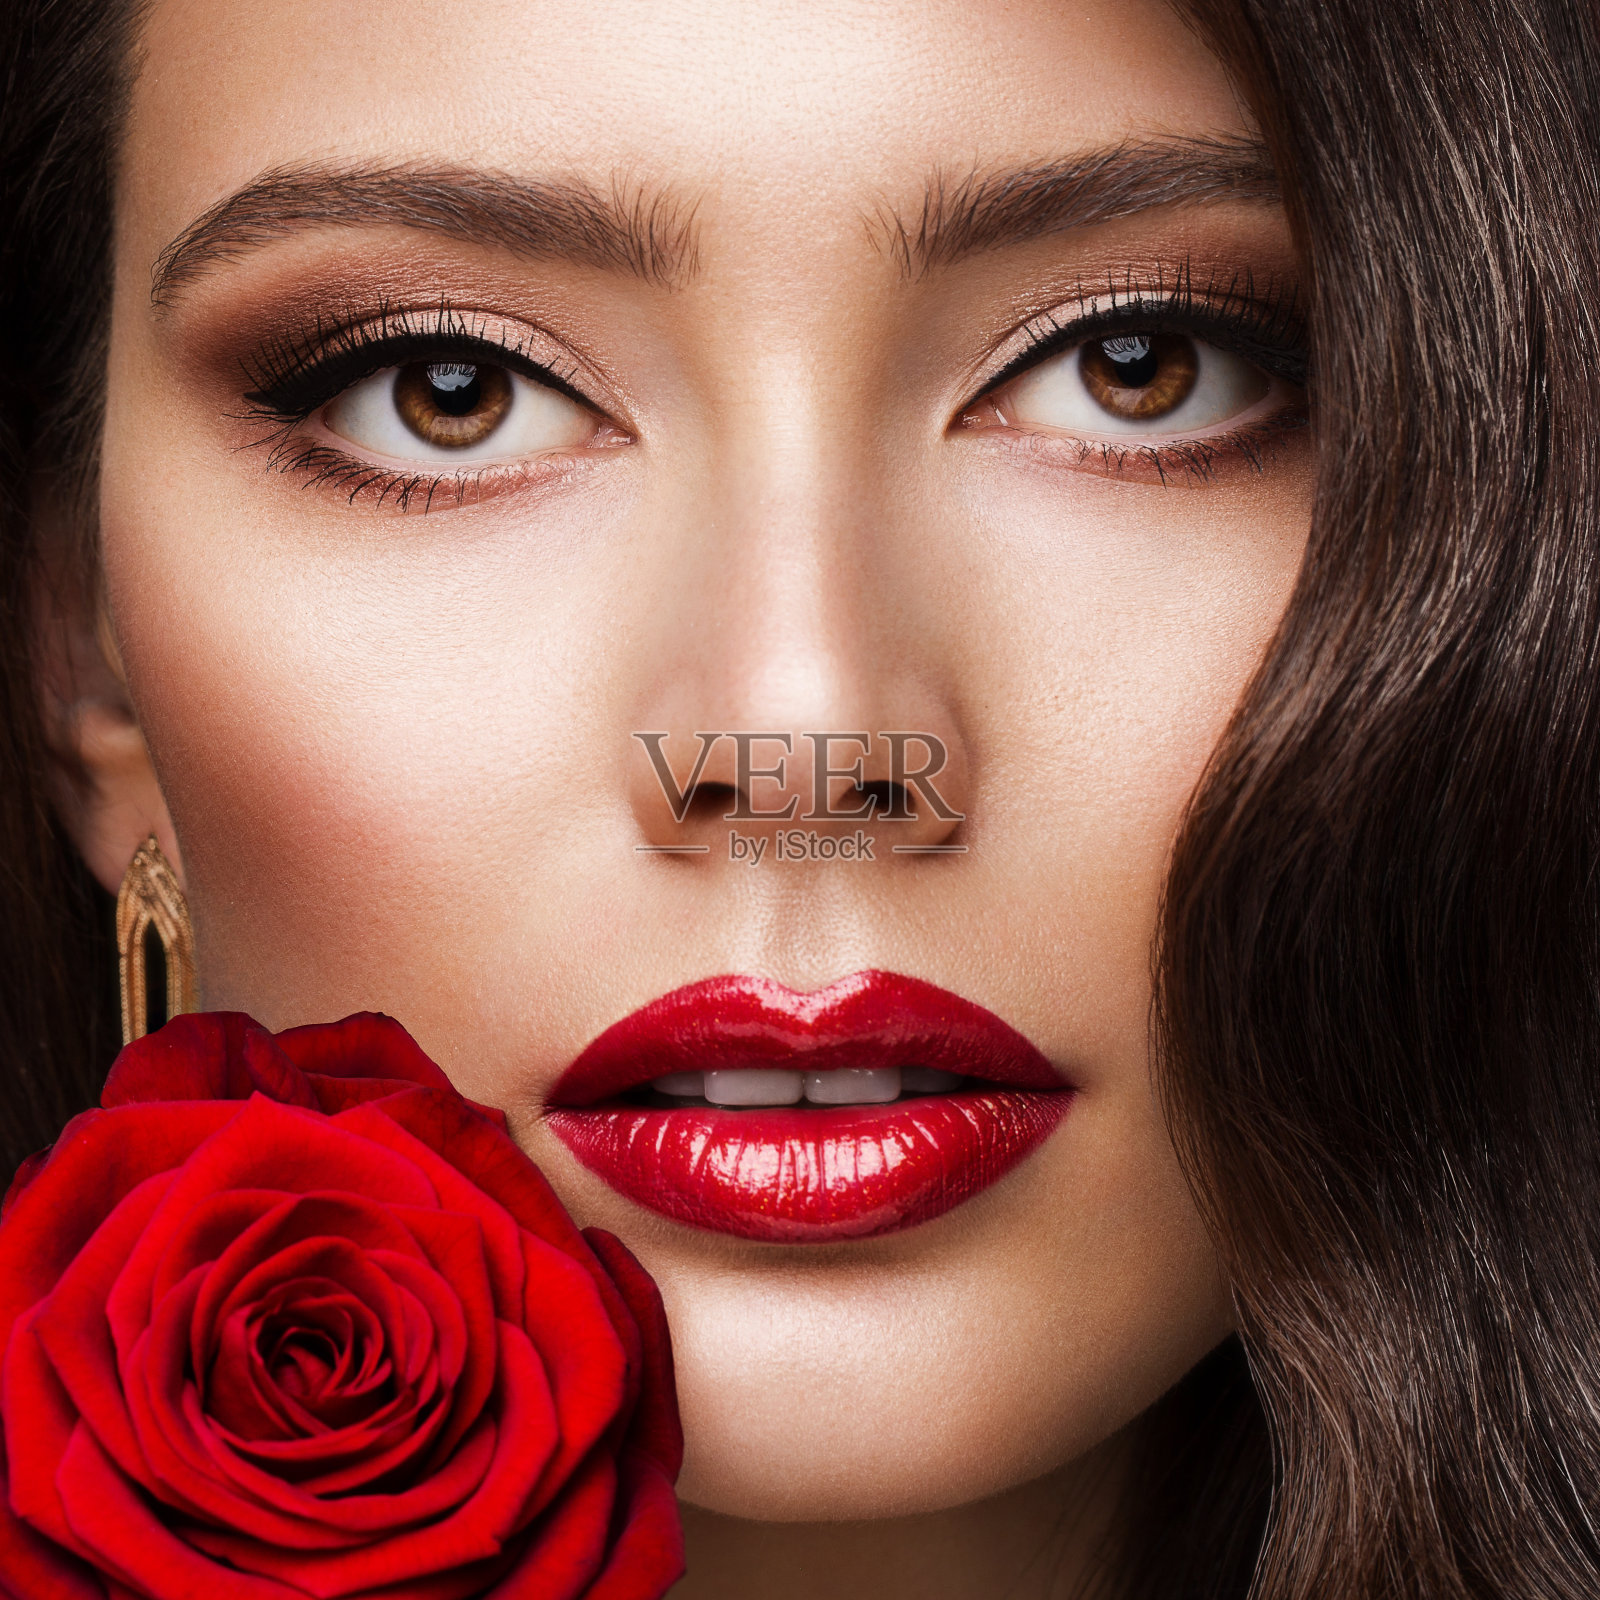 美女脸红唇画像与玫瑰。时尚模特女孩红唇妆。豪华皮肤护理化妆品和化妆接近照片摄影图片